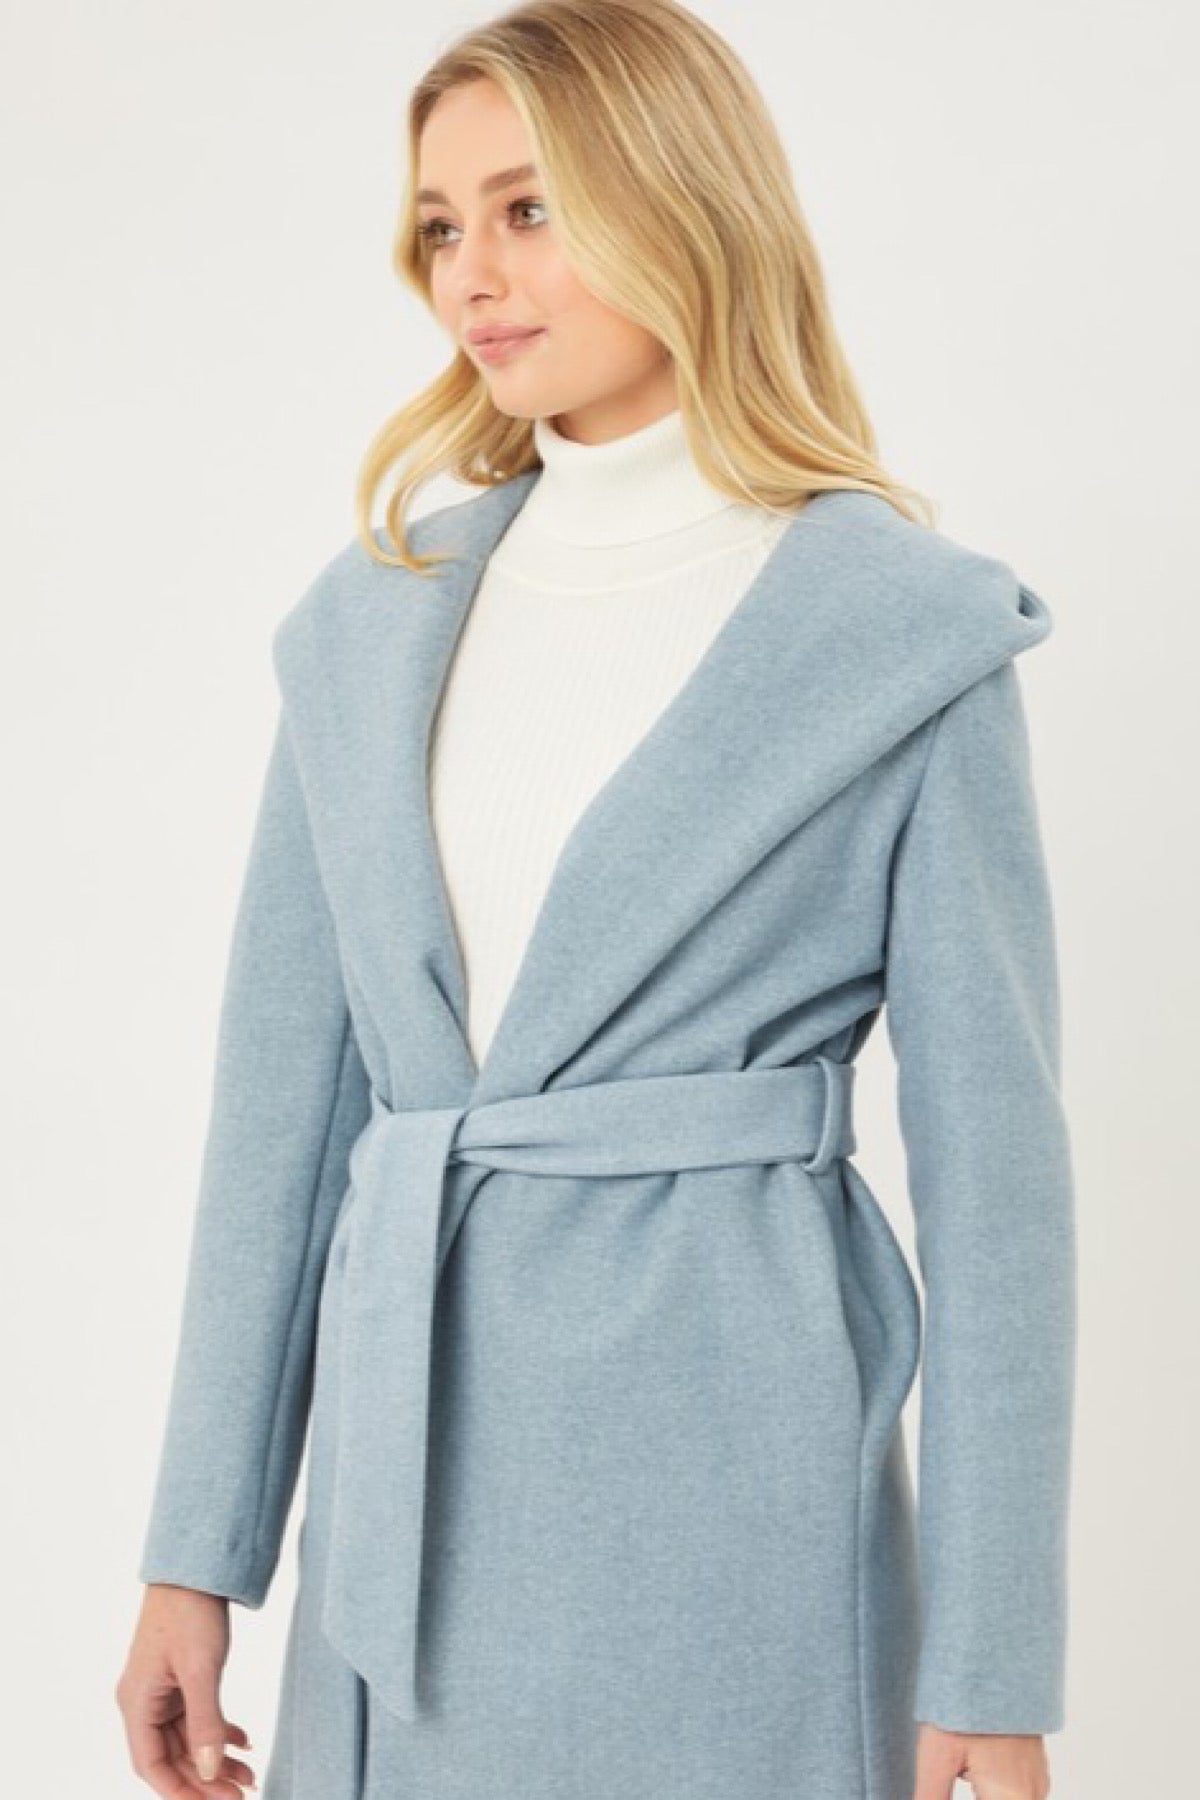 Cora Fleece Belted Coat With Hood